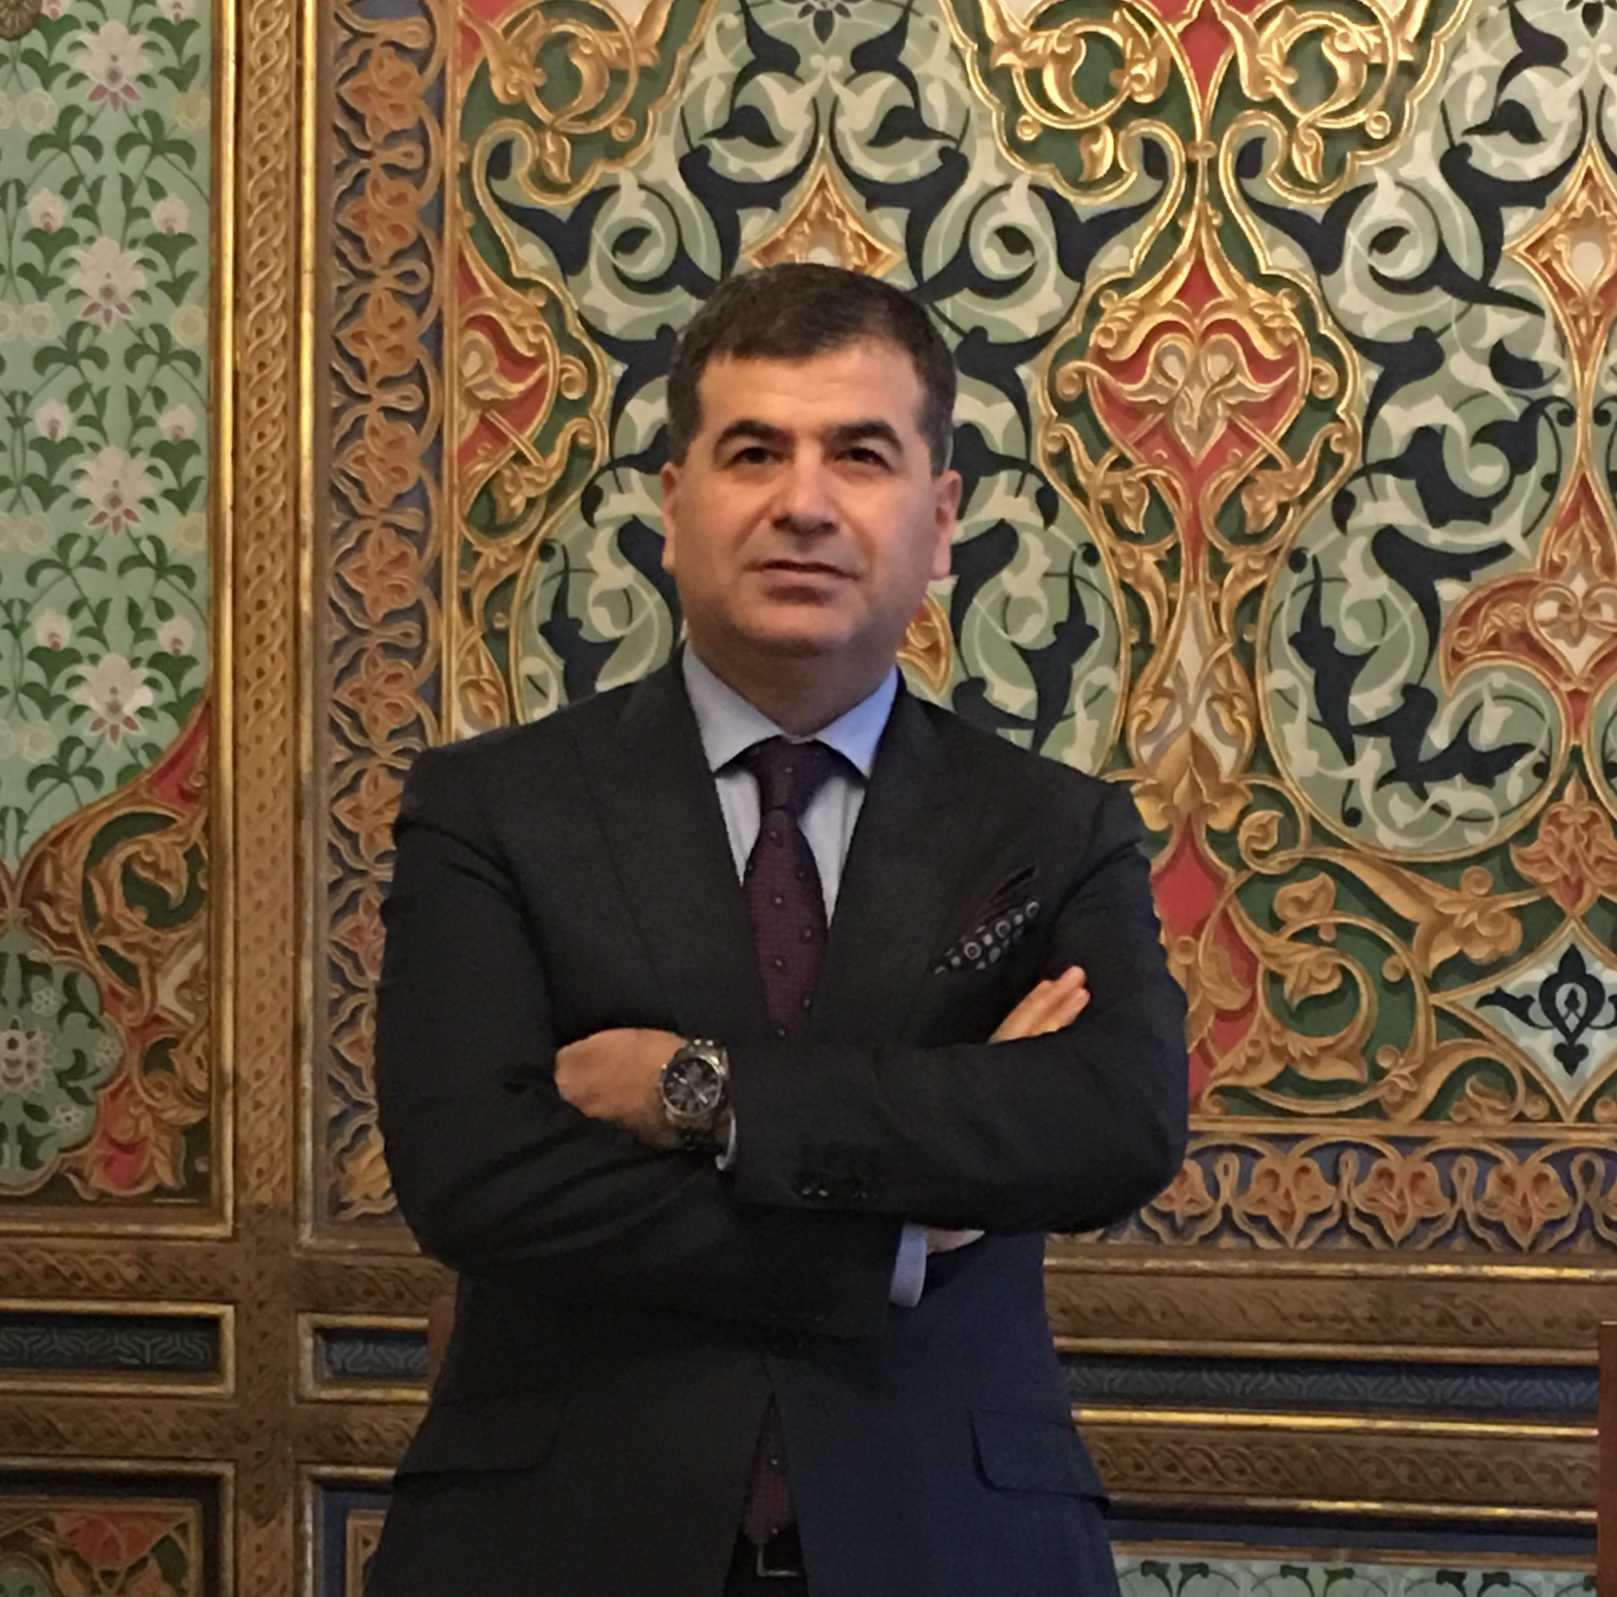 Prof. Dr. Murat Erdal